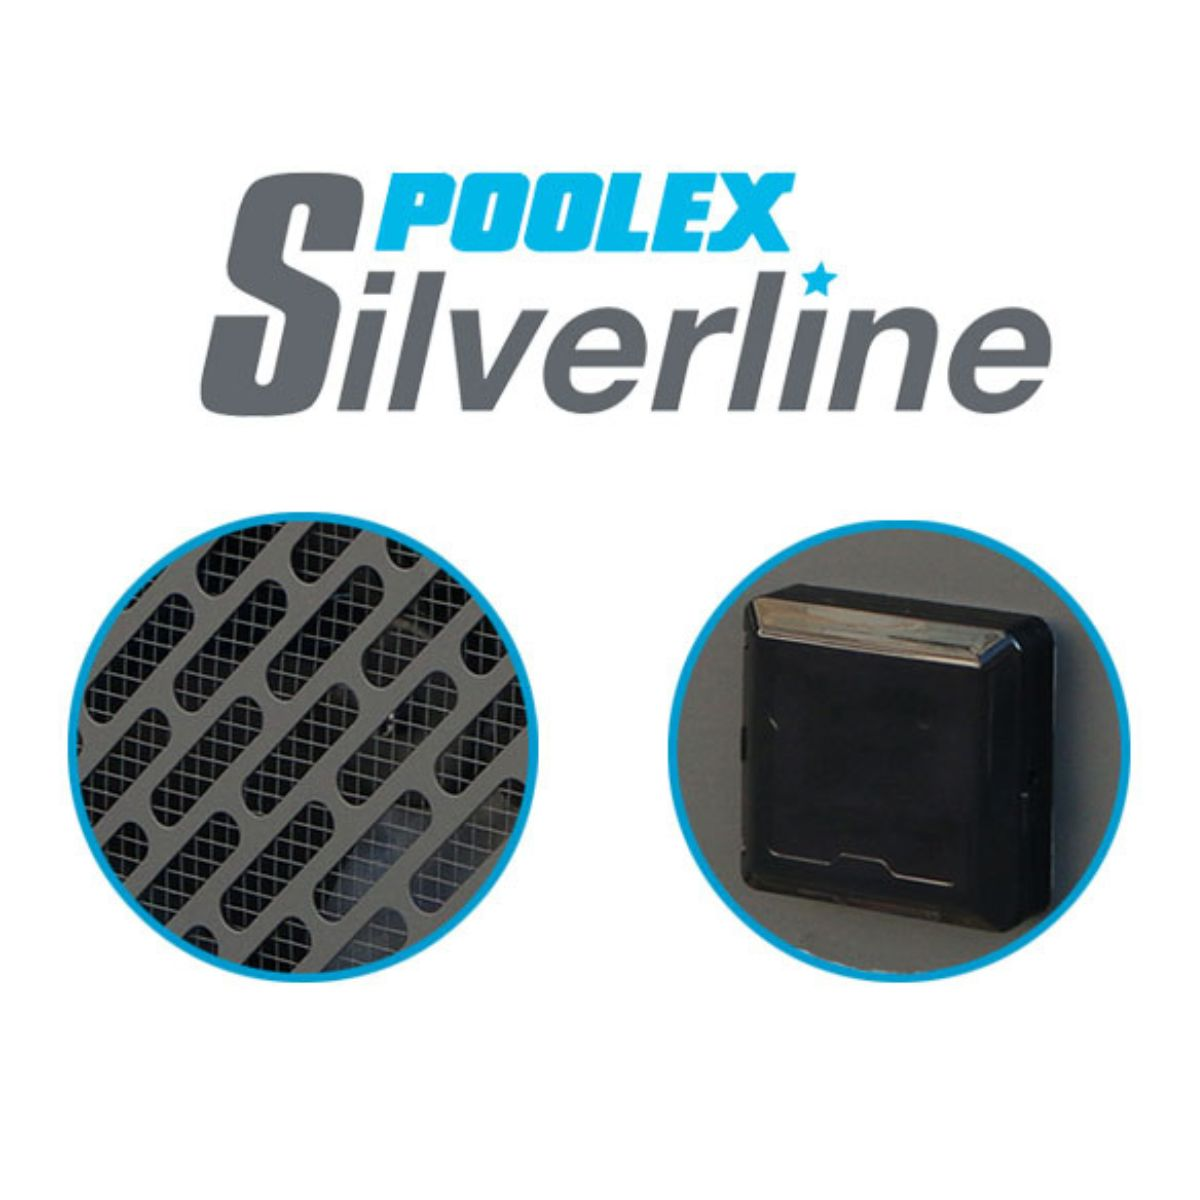 Silverline Schwimmbadpumpe 55 POOLEX